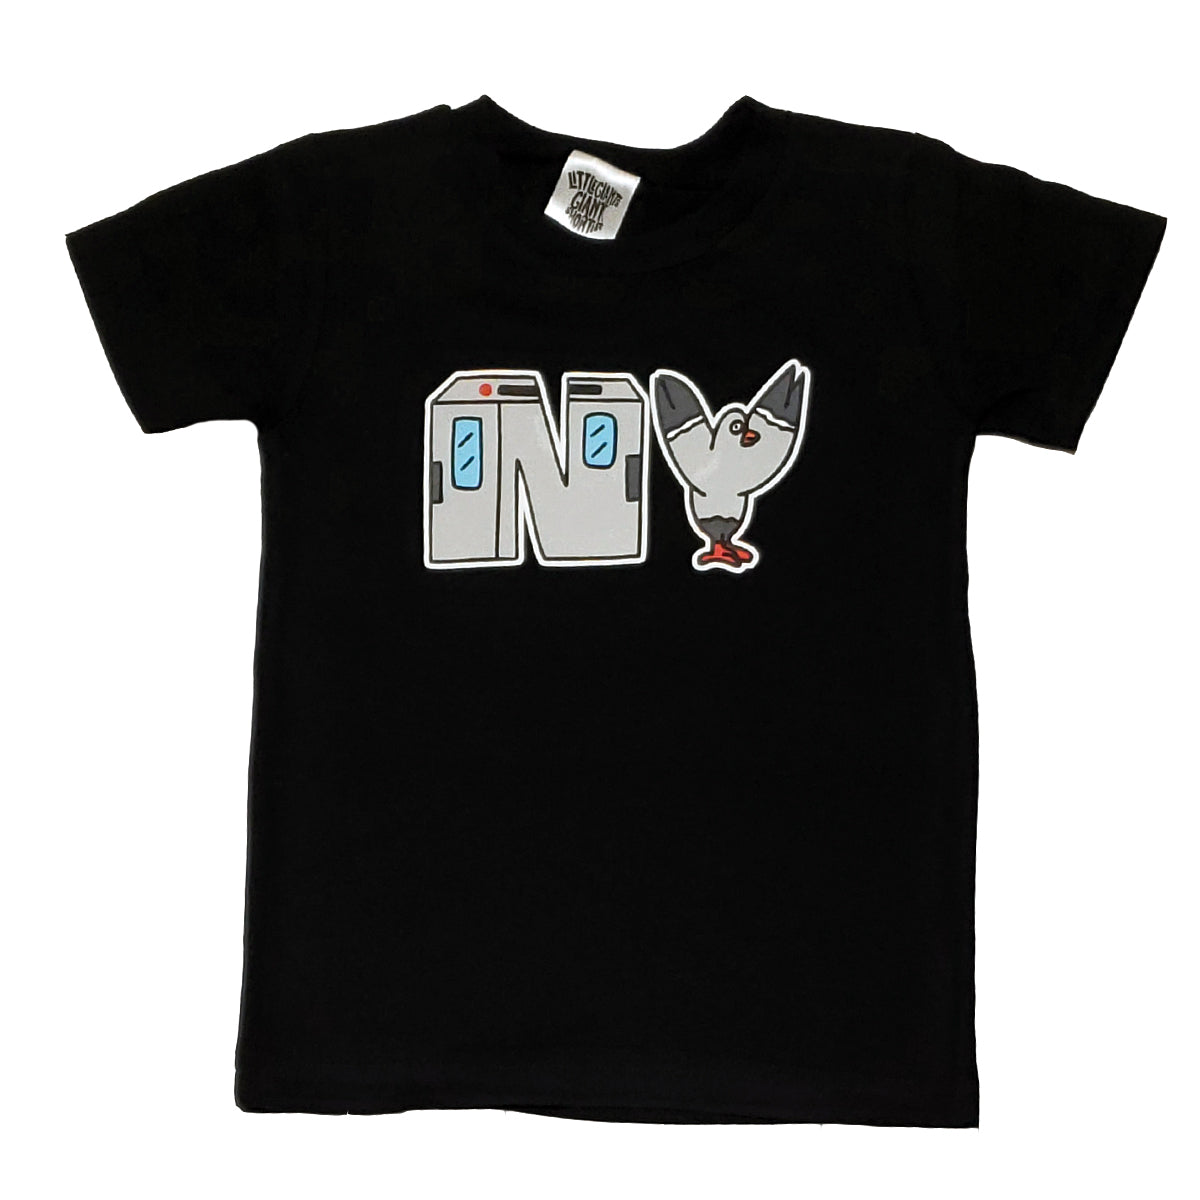 N.Y. T-shirt (Black)